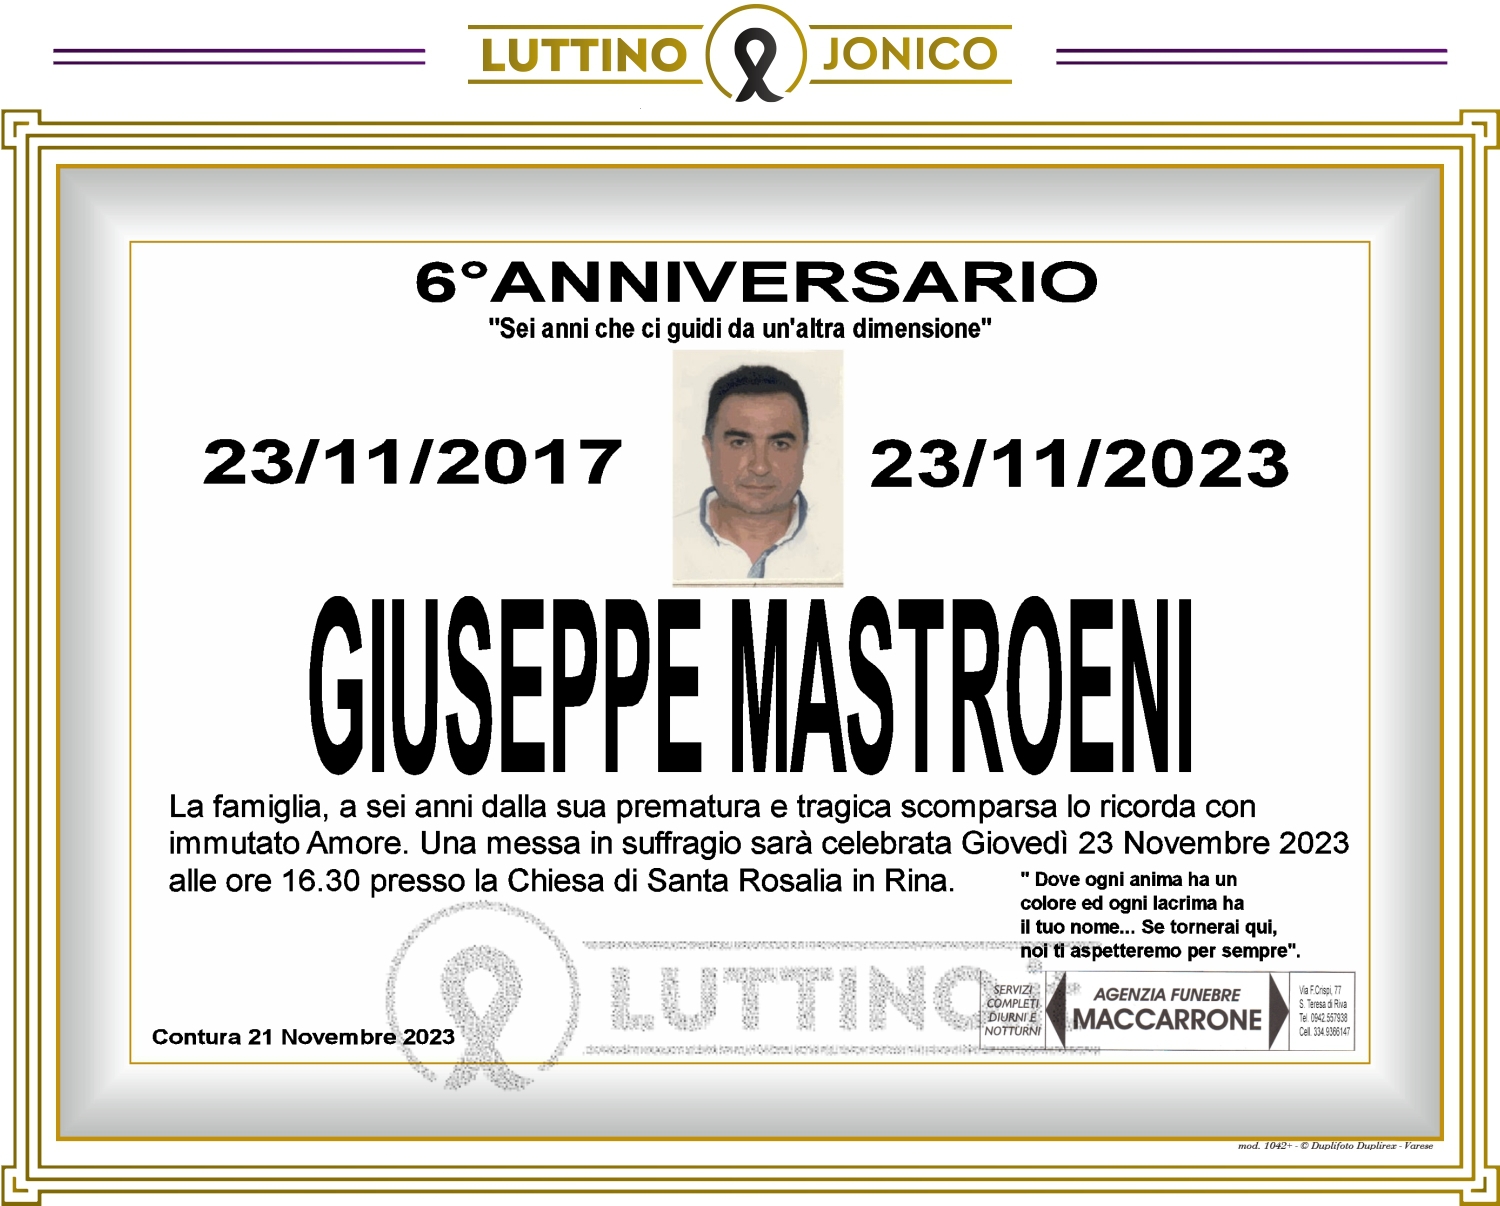 Giuseppe Mastroeni